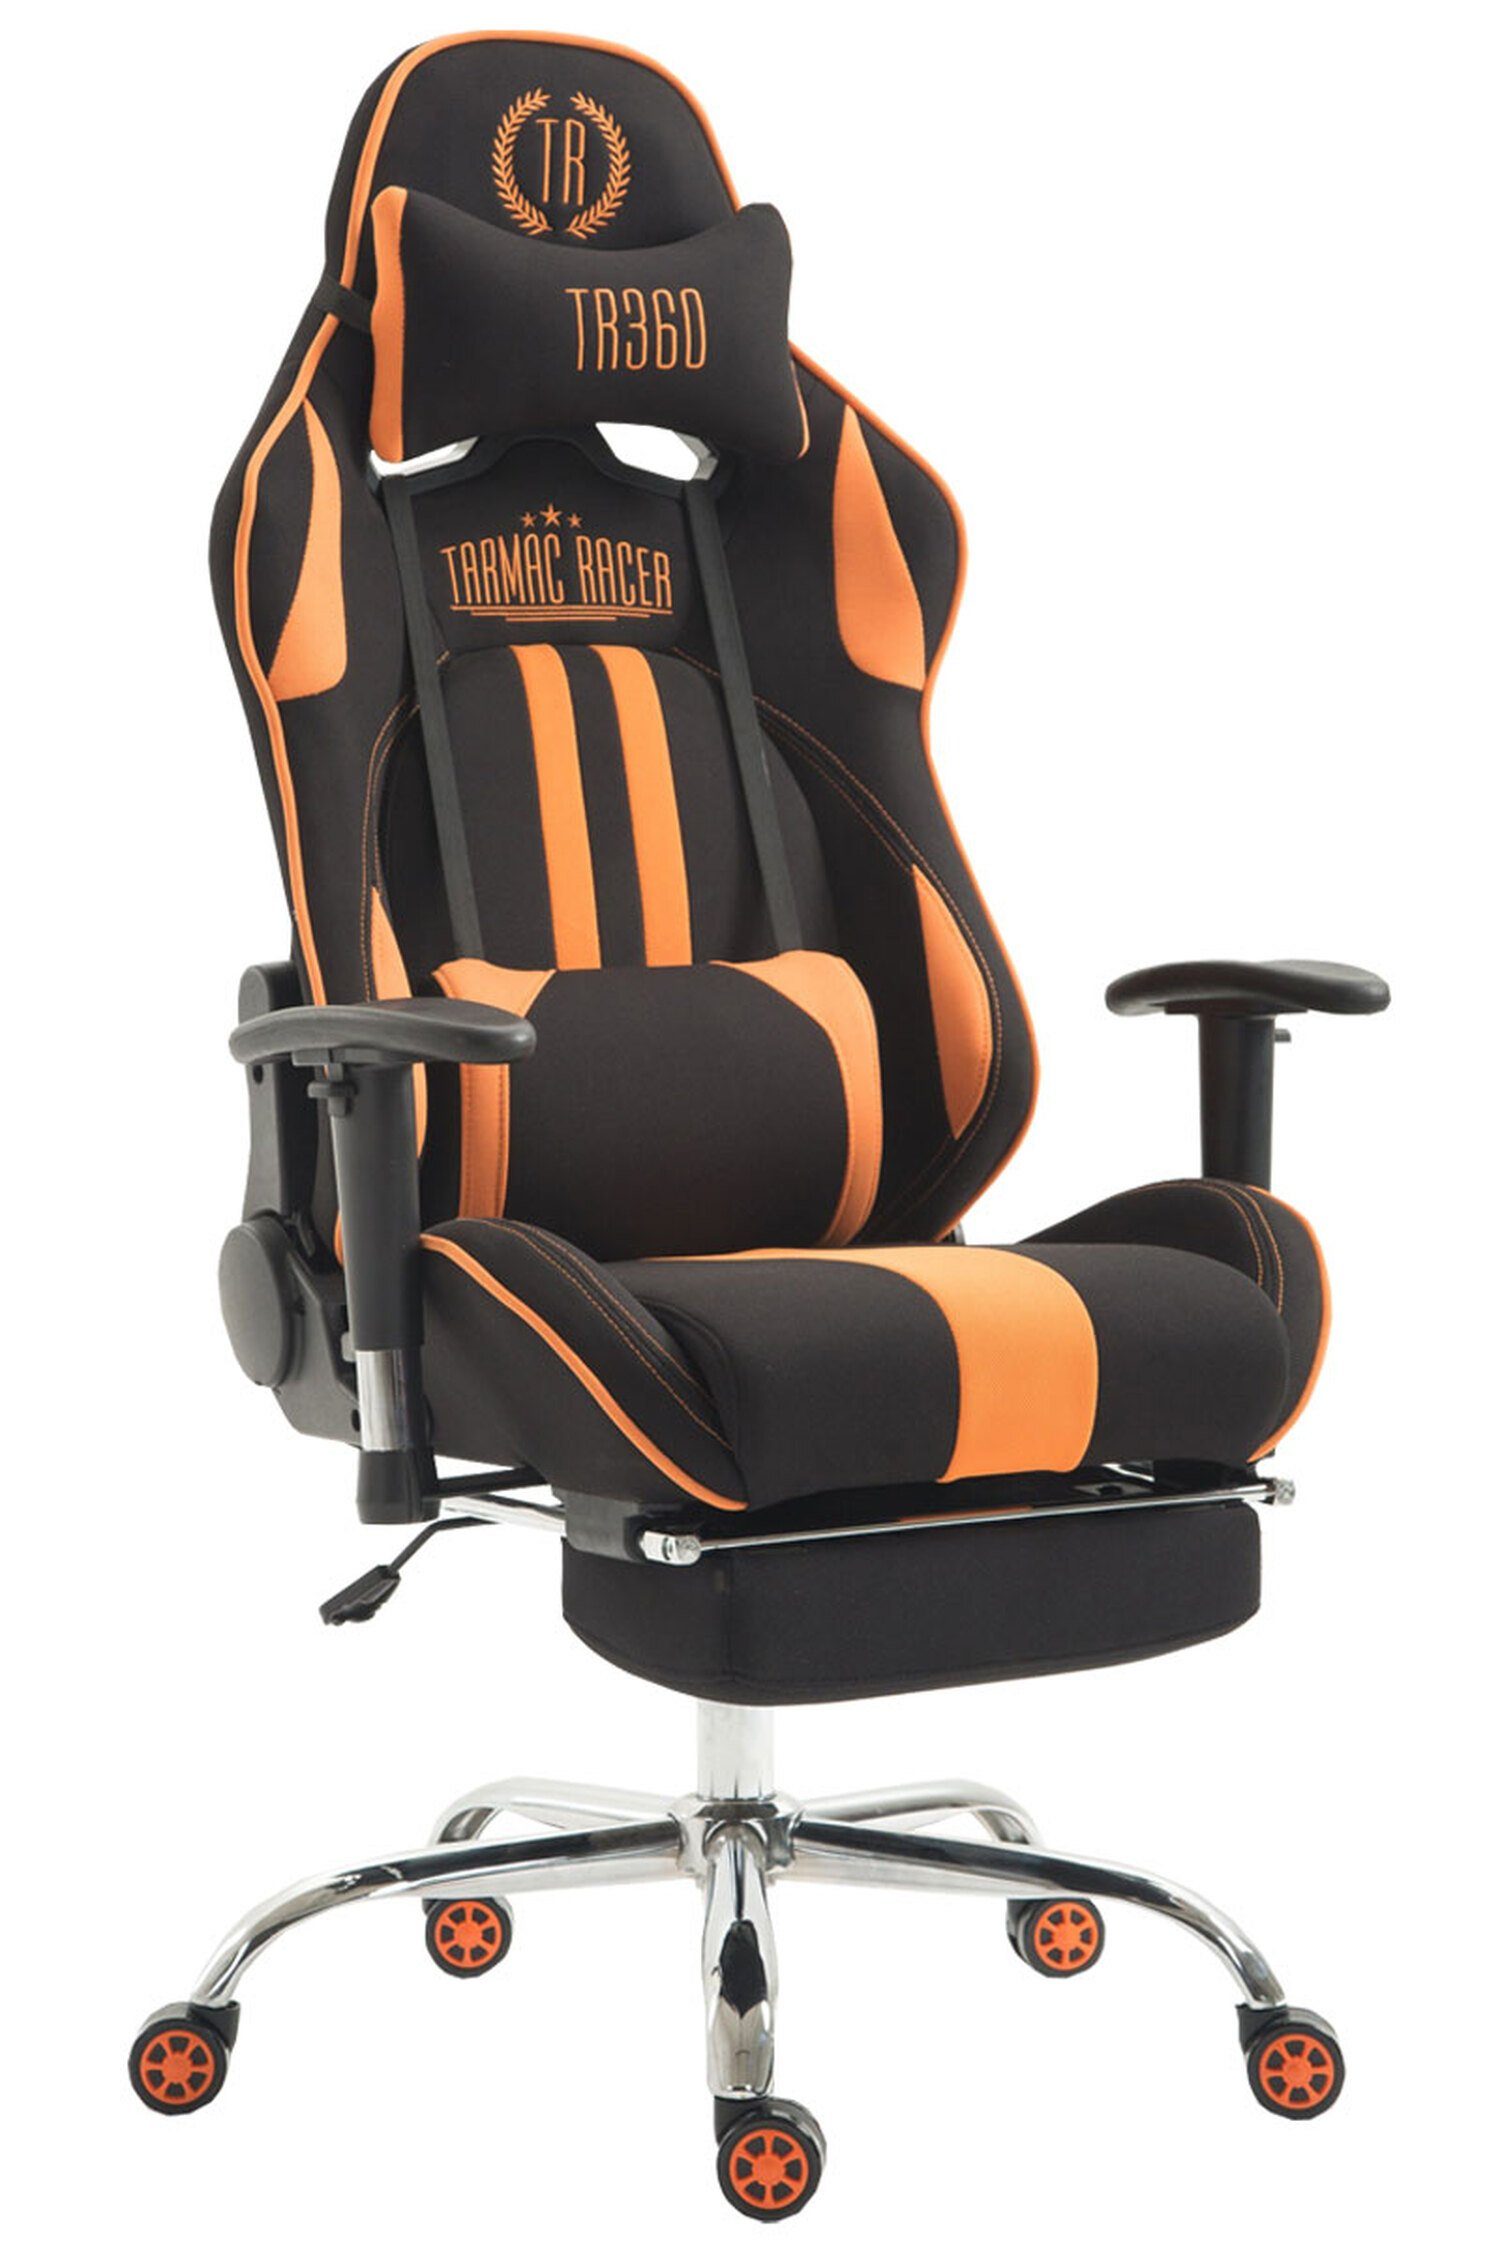 TPFLiving Gaming-Stuhl Limitless mit bequemer Rückenlehne - höhenverstellbar und 360° drehbar (Schreibtischstuhl, Drehstuhl, Gamingstuhl, Racingstuhl, Chefsessel), Gestell: Metall chrom - Sitzfläche: Stoff schwarz/orange